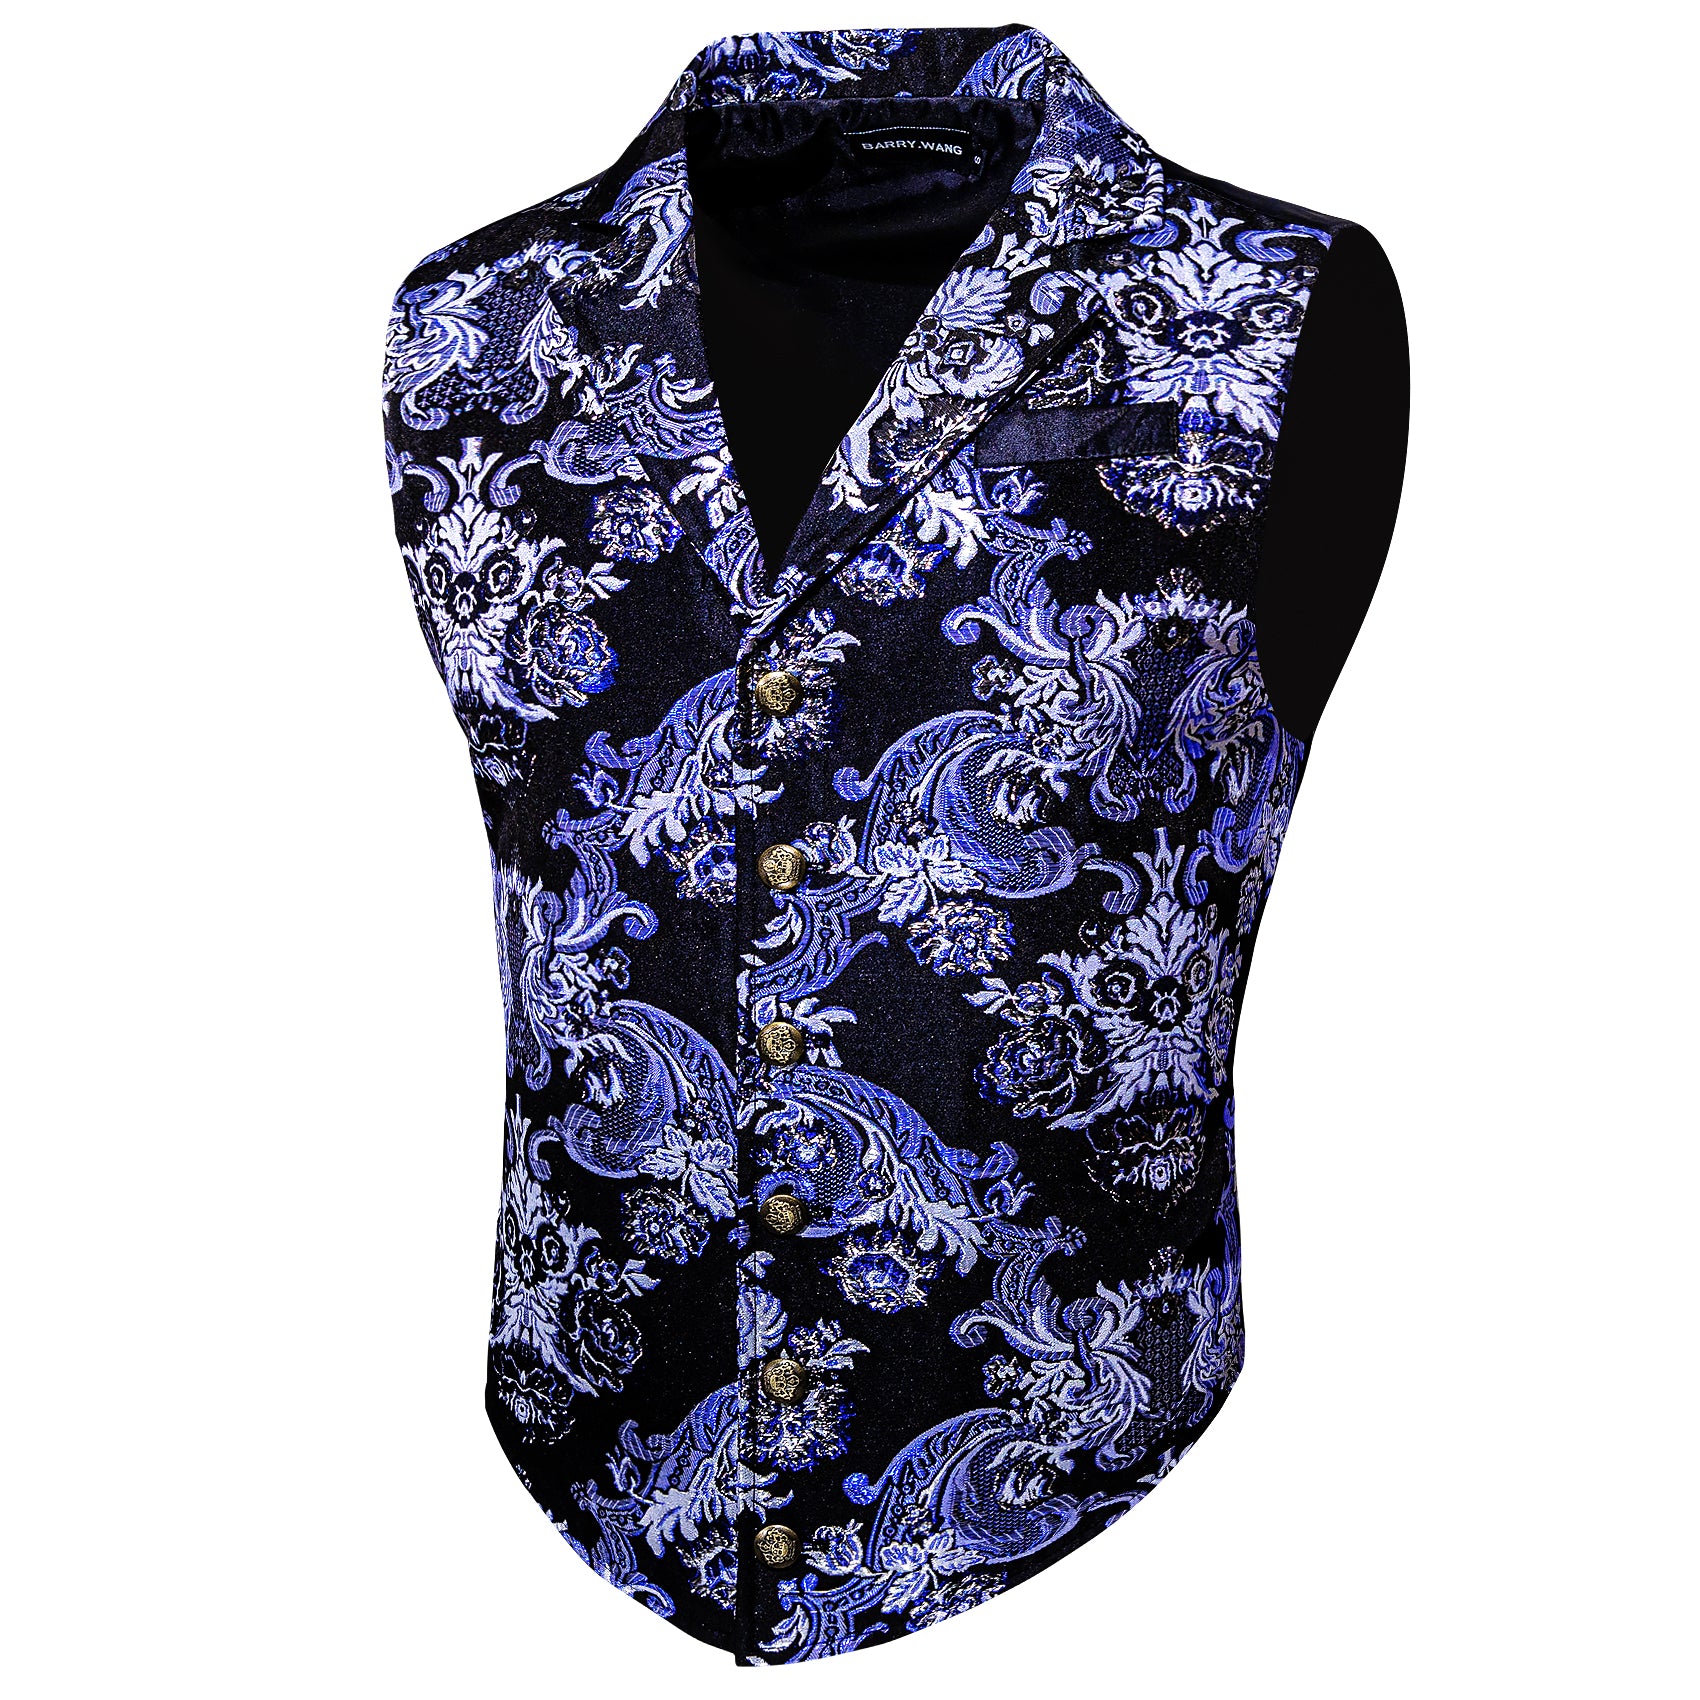 Barry.wang Men's Vest White Purple Black Jacquard Floral Silk Waistcoat Vest